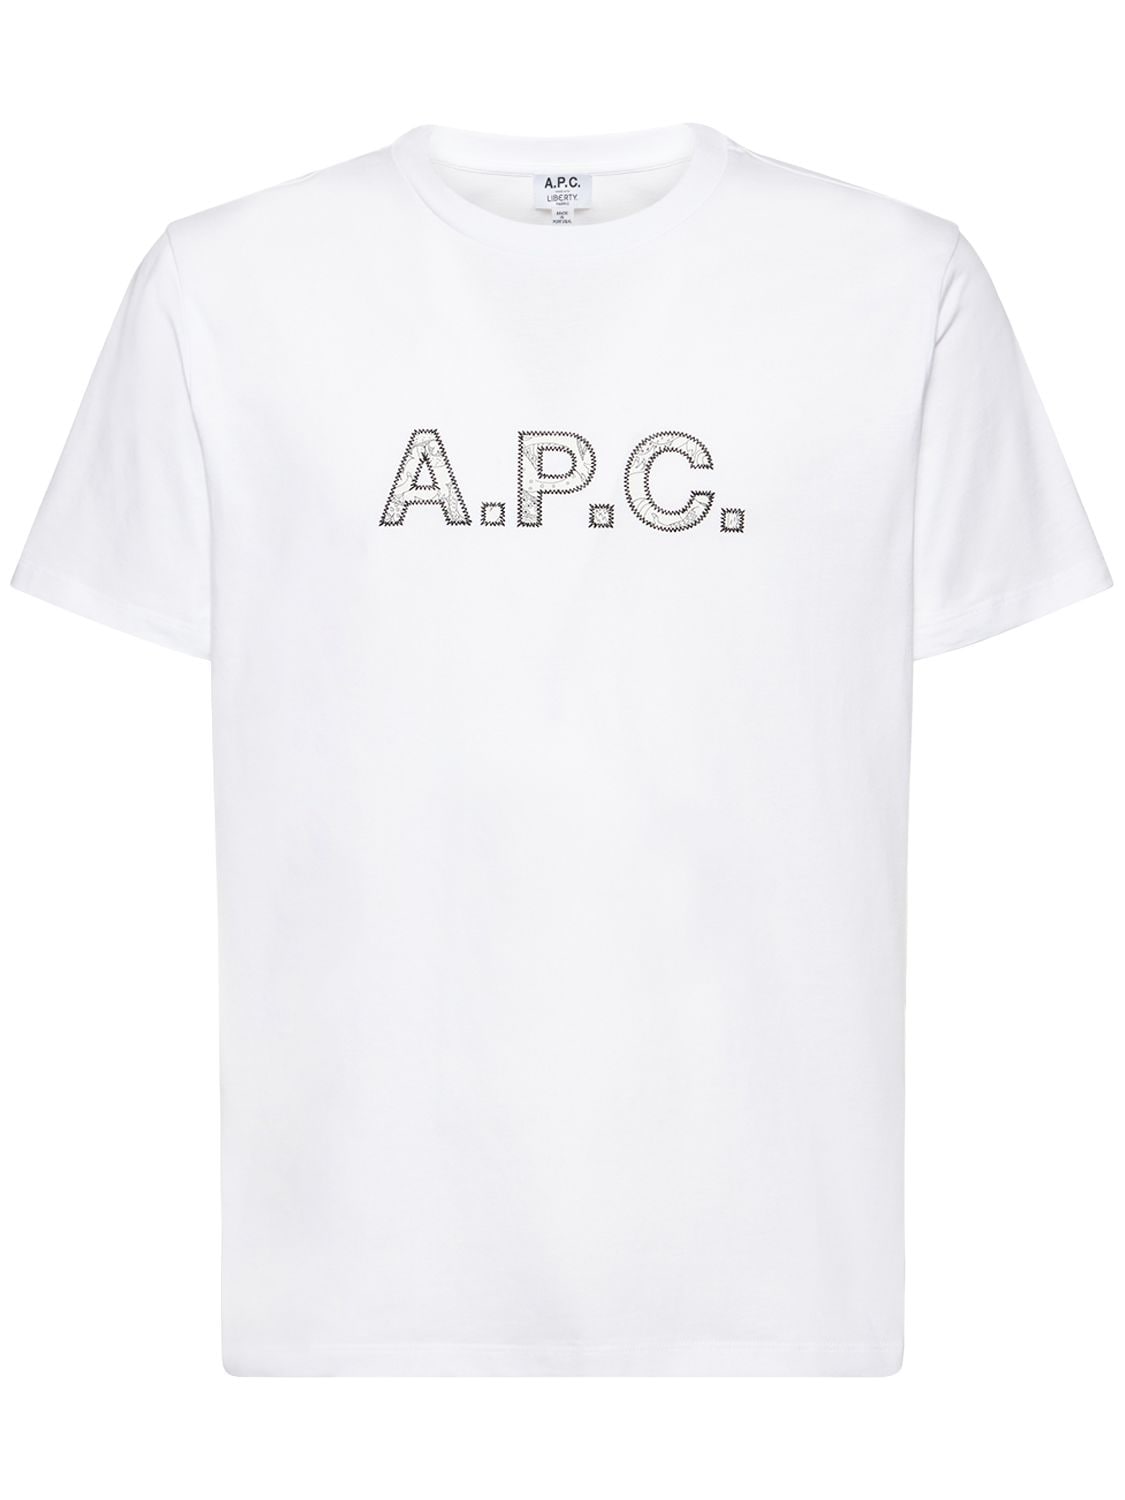 A.p.c. X Liberty Organic Cotton T-shirt – MEN > CLOTHING > T-SHIRTS